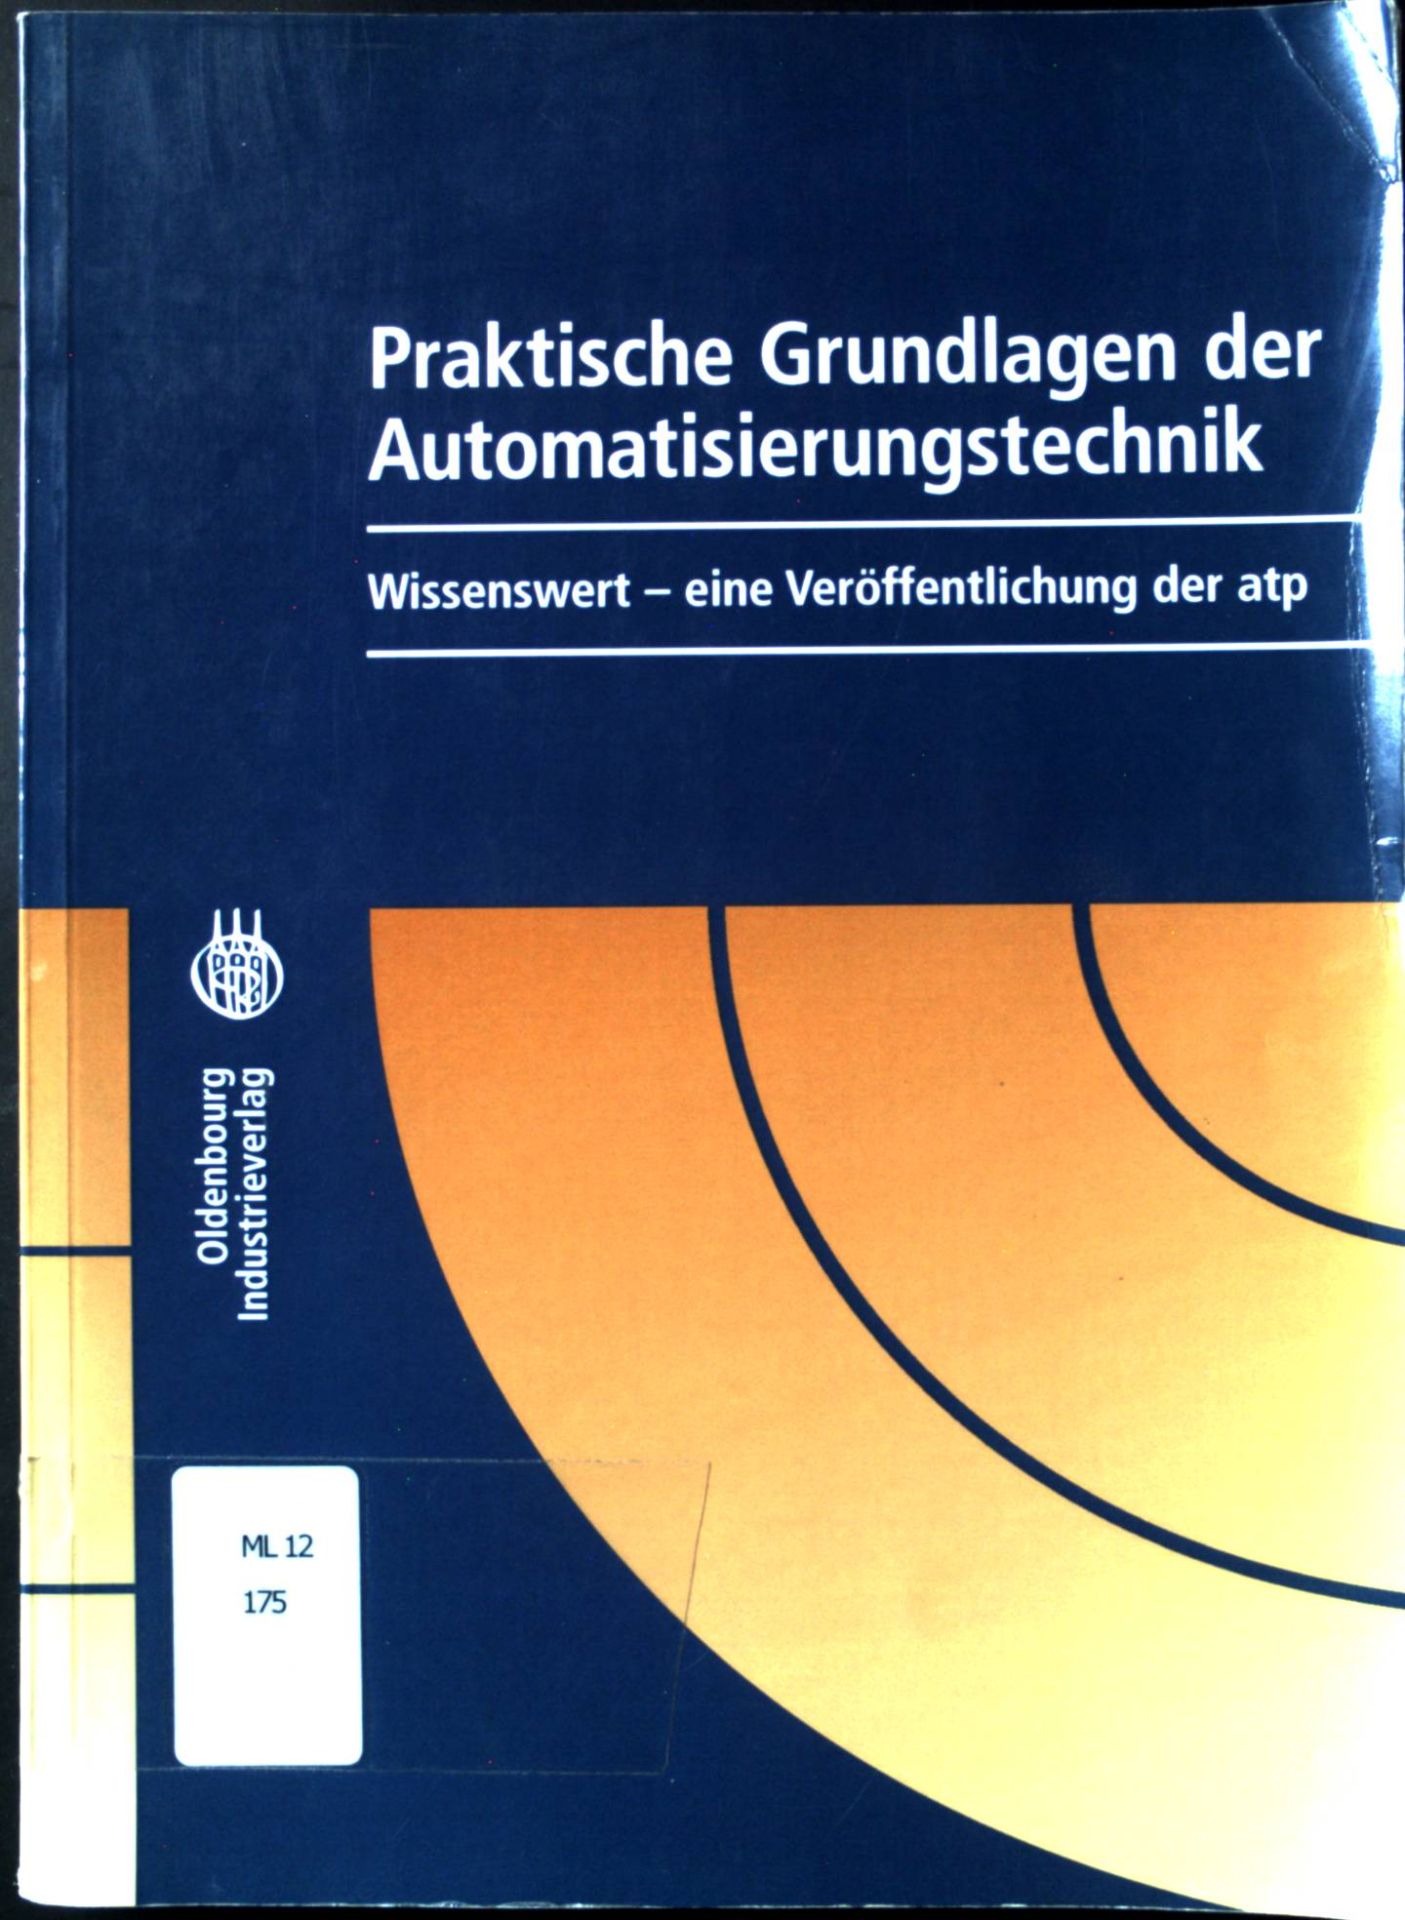 Praktische Grundlagen der Automatisierungstechnik : wissenswert - eine Veröffentlichung der atp. - Niemann, Karl-Heinz